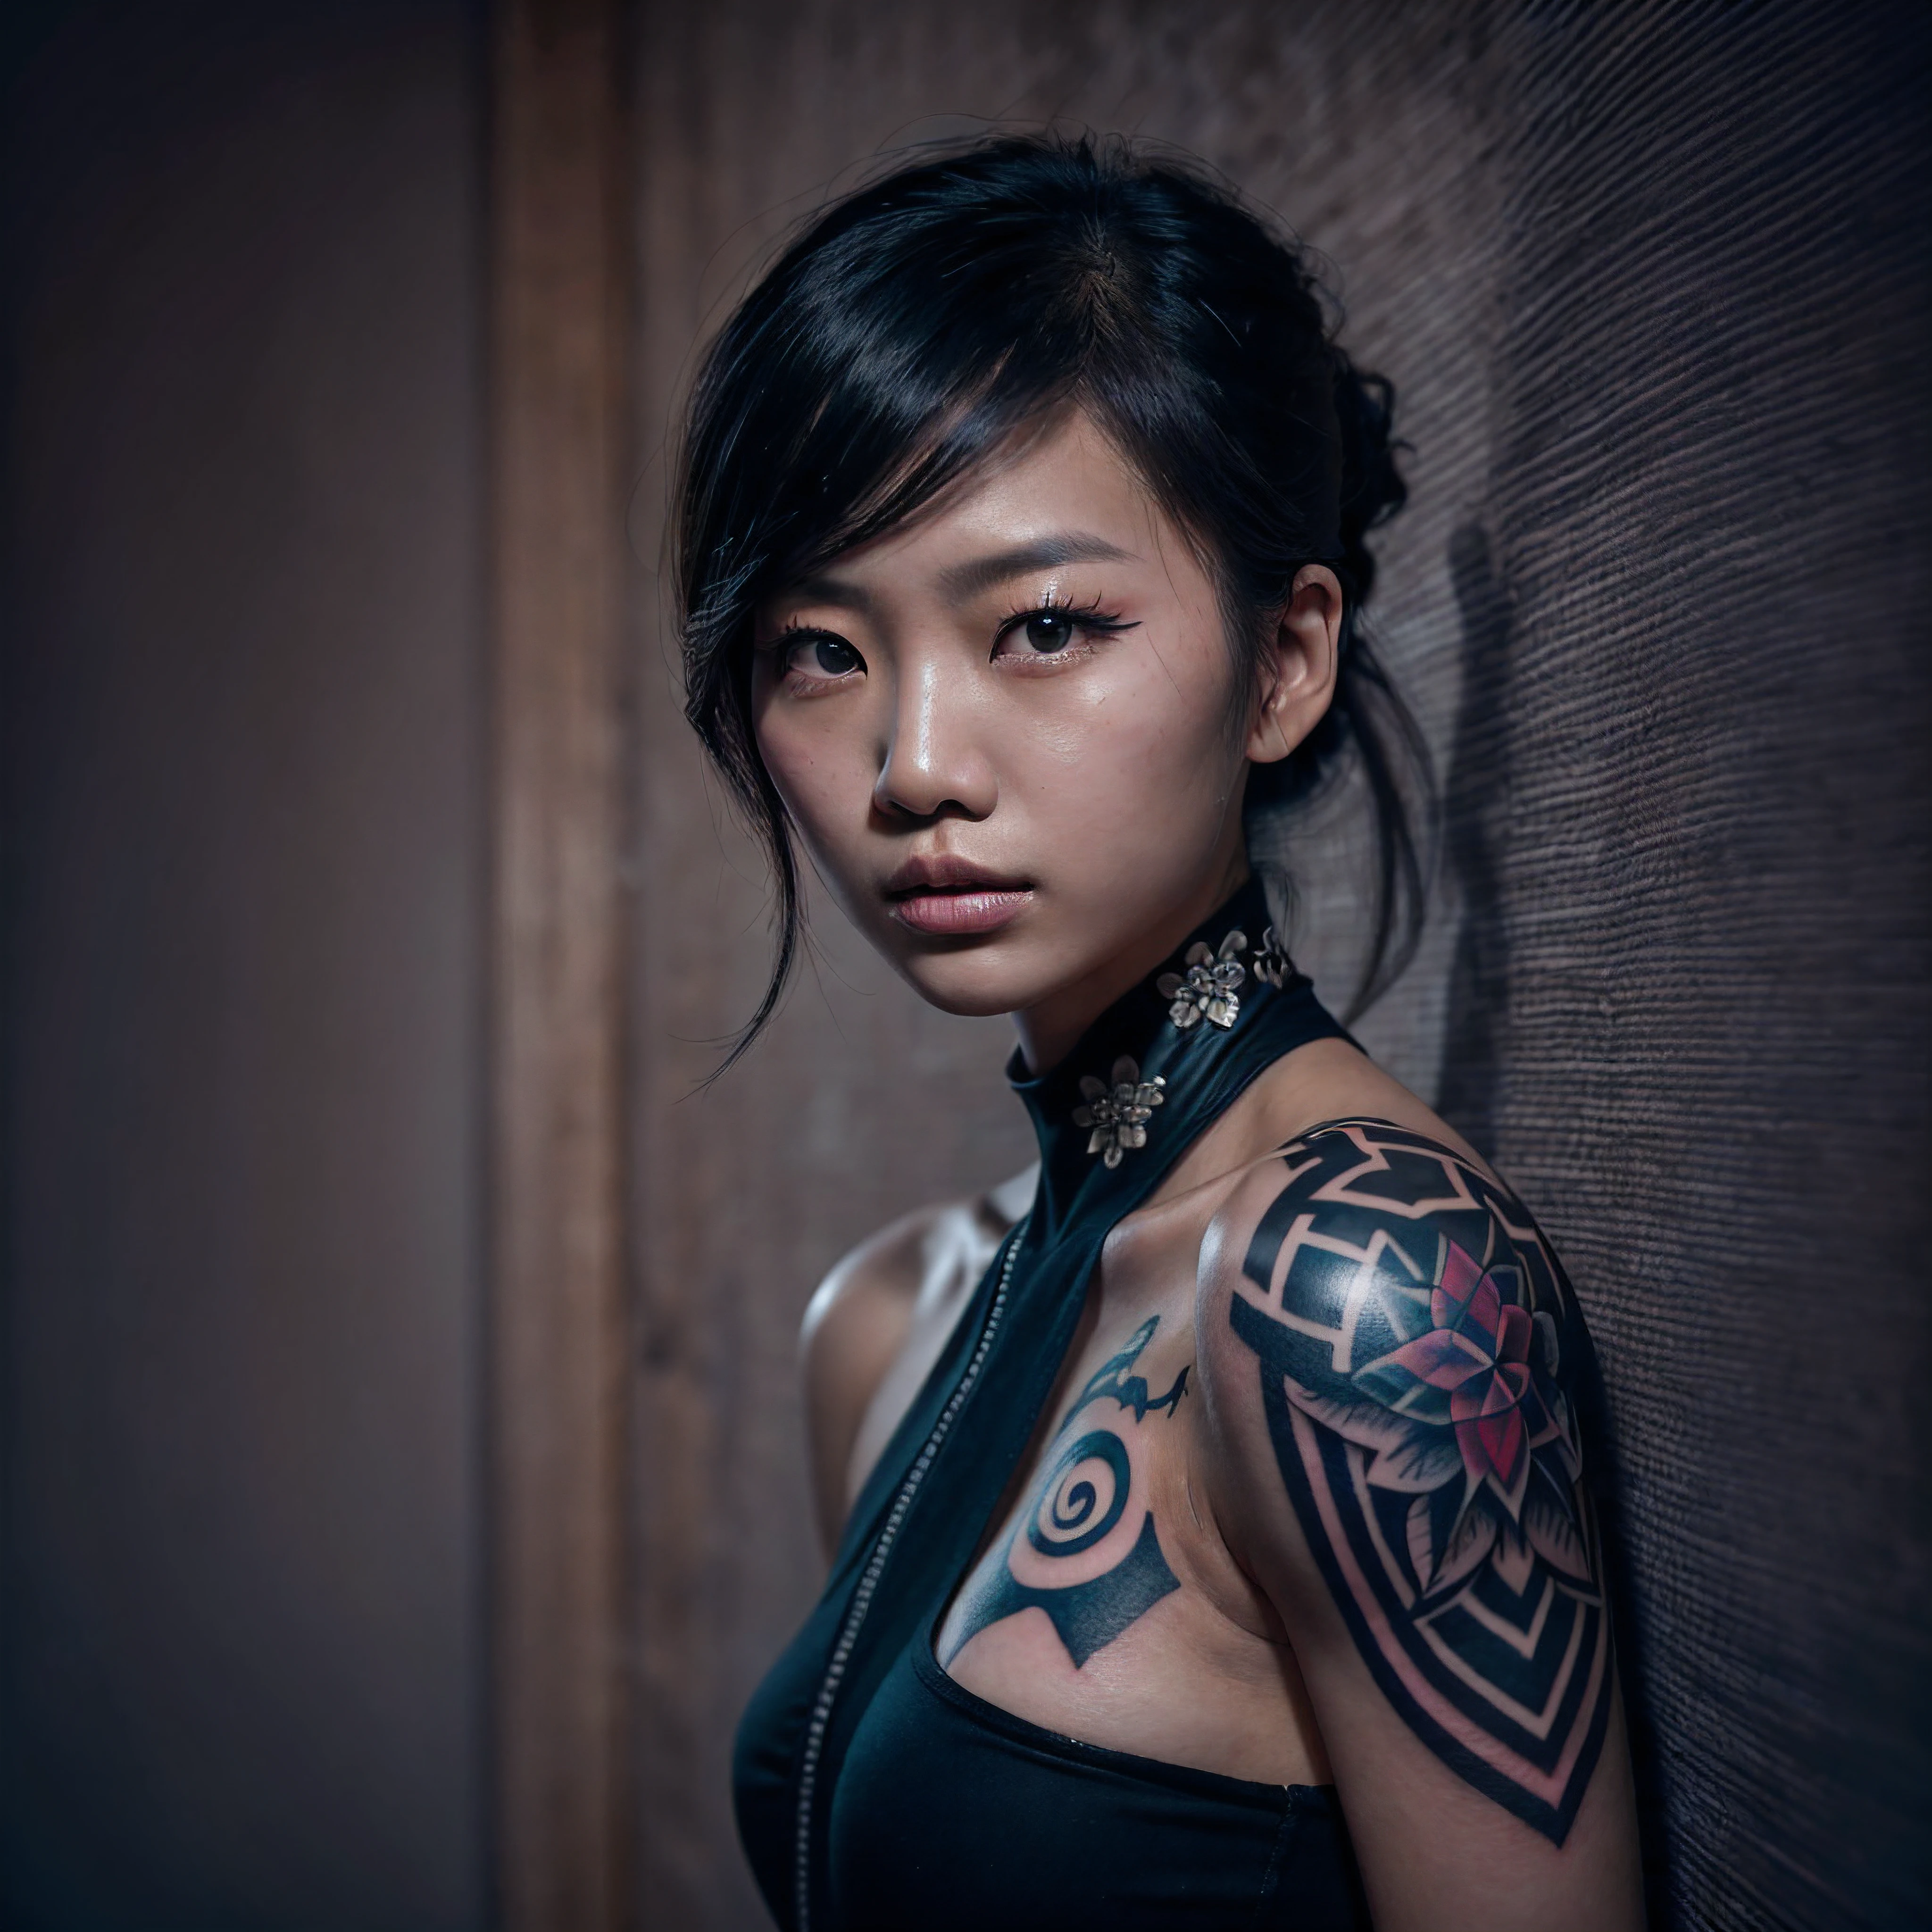 (亲密肖像, 复杂构图:1.3), (细致而富有表现力的眼睛:1.6), (未来主义风格), (An 亲密肖像 of an Asian woman showing her entire body covered with black geometric tattoos:1.3), (闭嘴:1.2), (她眼神中流露出真实的表情: 1.2), 画着深色烟熏眼妆, 照片以令人惊叹的 8k 分辨率和原始格式拍摄，以保留最高质量的细节. 她穿着优雅的未来派服装, (裸露的肩膀, 小乳房:1.3), (她的眼睛被刻画得十分细致: 1.3), 这张照片是用一个强调她眼睛深度的镜头拍摄的, (风在她周围翻腾), 背景是黑暗的工作室场景，增强了场景的色彩. 灯光和阴影经过精心设计，凸显了她肤色的丰富和强烈的氛围. 她富有创意的发型与她的皮肤形成了鲜明的对比, 整体构图真实而优雅地捕捉到了她的本质, 创作一幅颂扬她的传统和美丽的肖像. 利用最佳阴影和照明技术的摄影, 创造出超越视觉的迷人画面, 稍微倾斜头部,